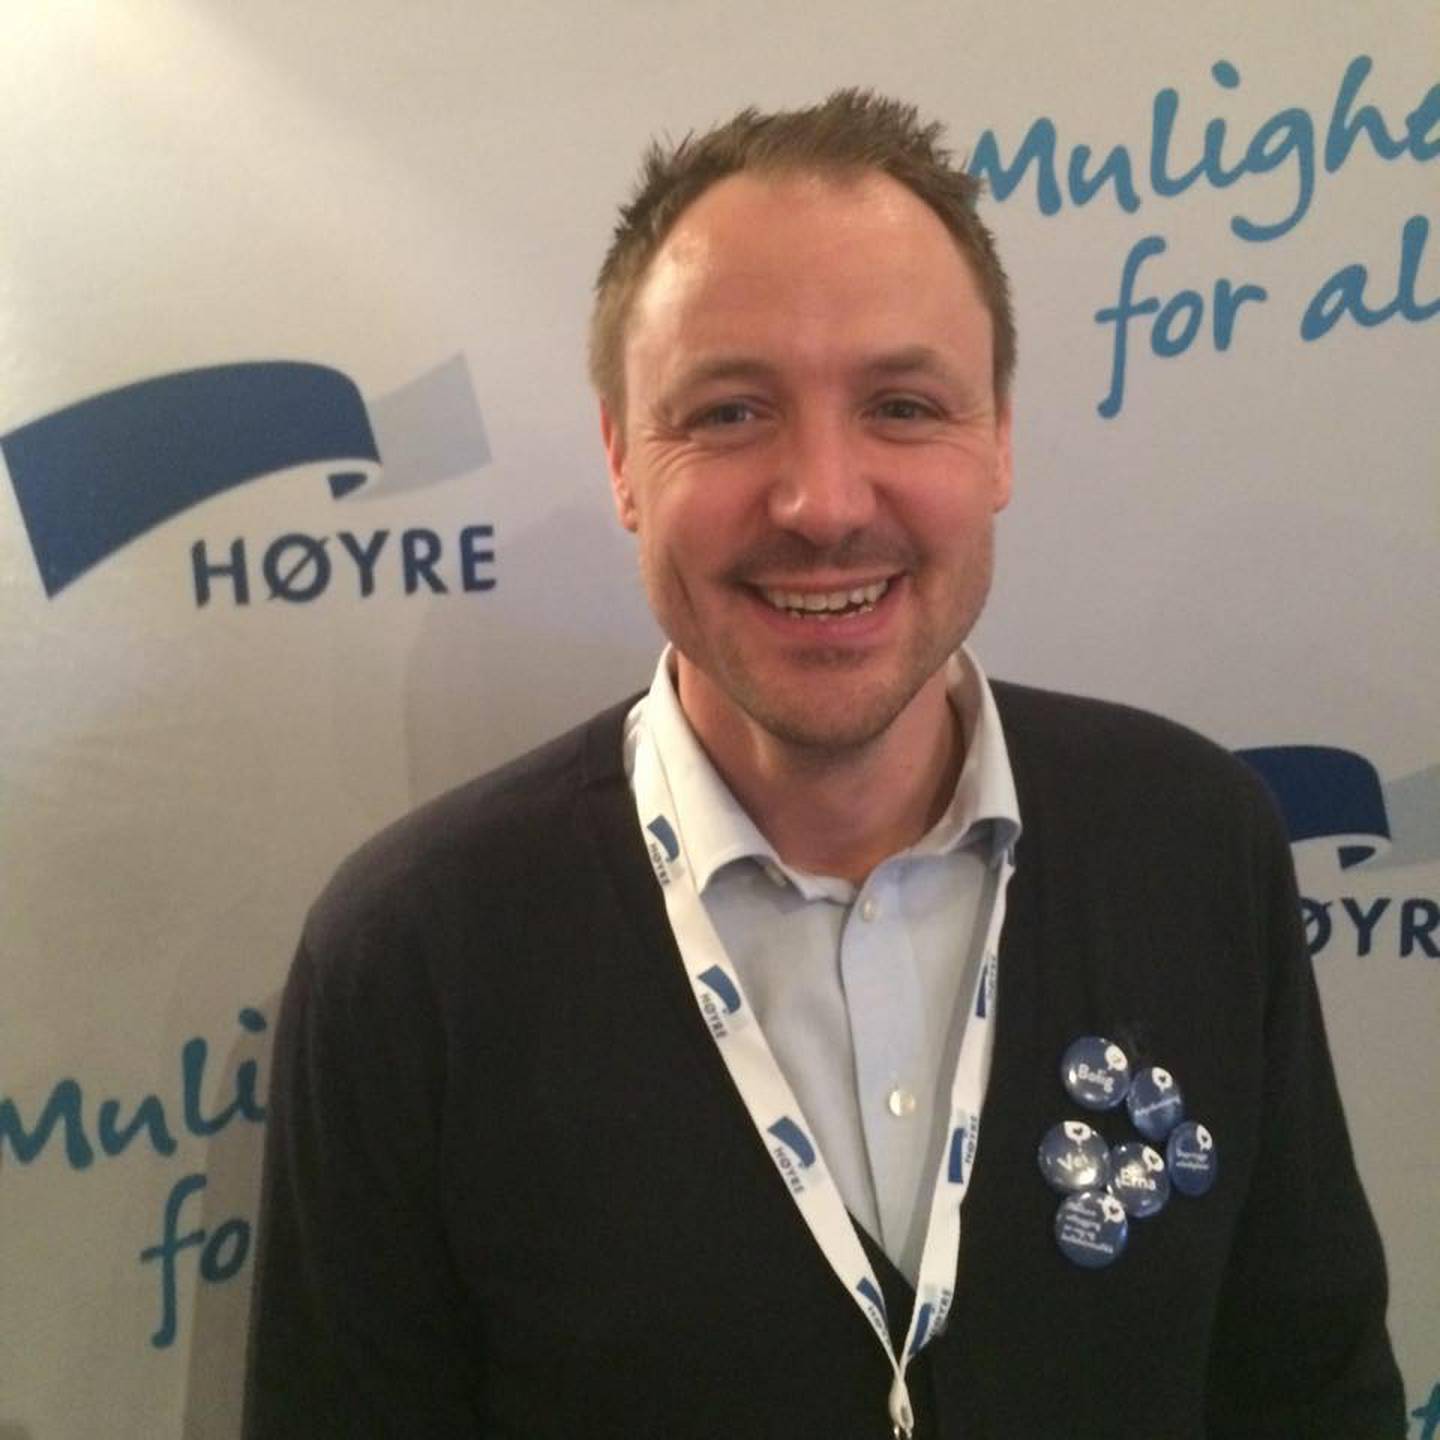 Da Roy engasjerte seg i politikken, falt valget på Høyre. Her fra 2015.